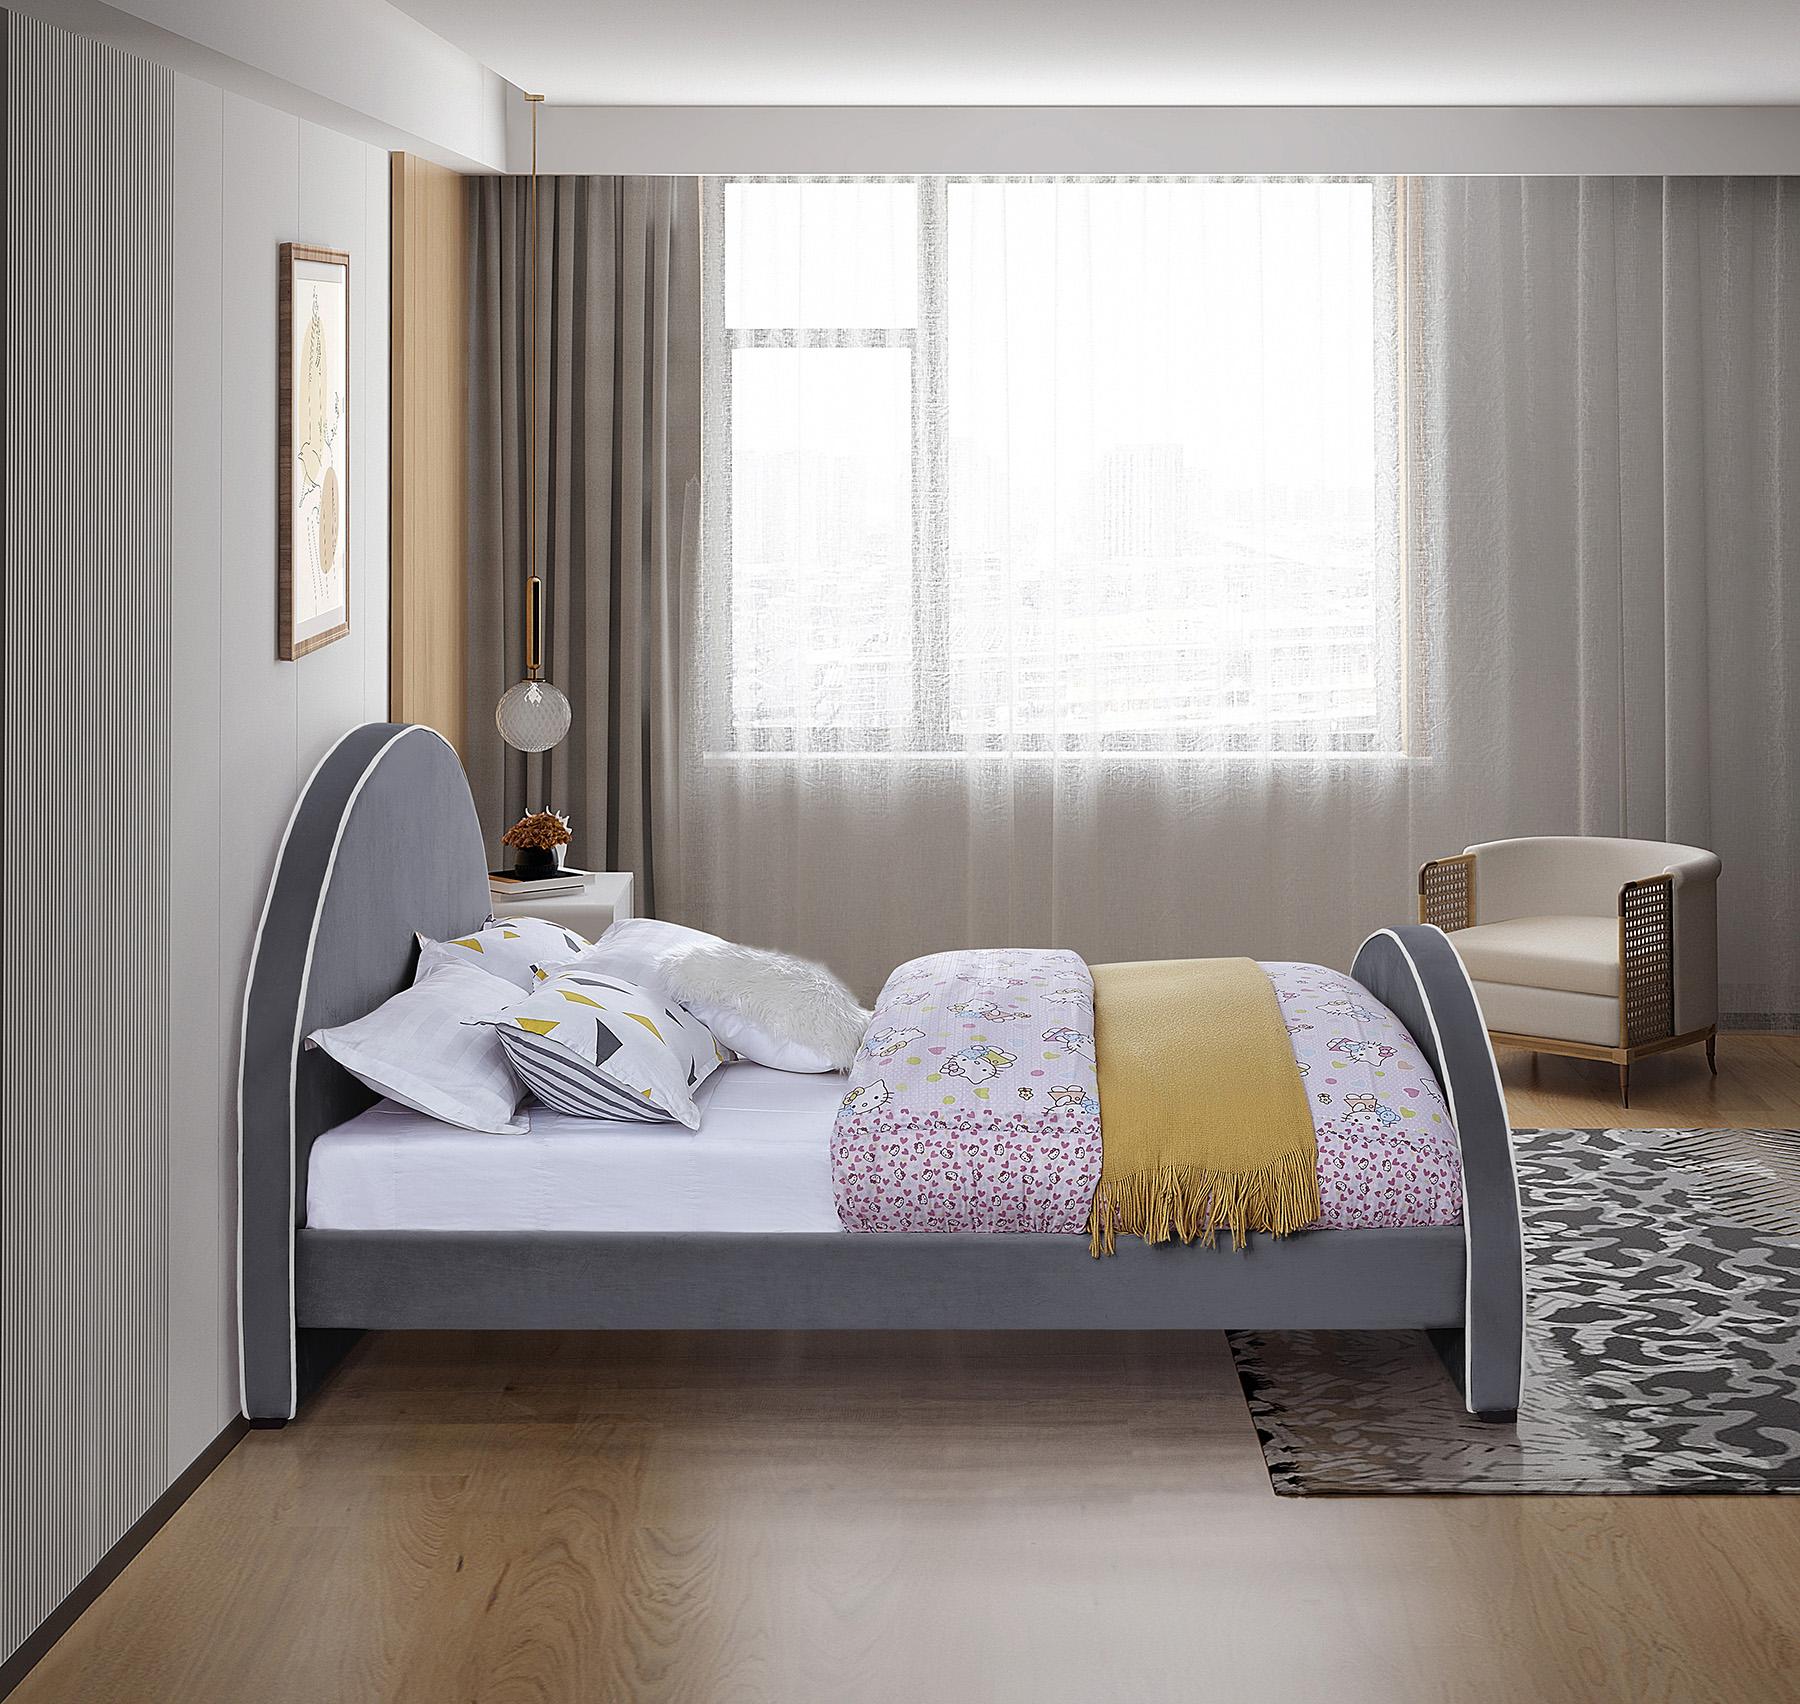 

    
BrodyGrey-K Meridian Furniture Platform Bed
